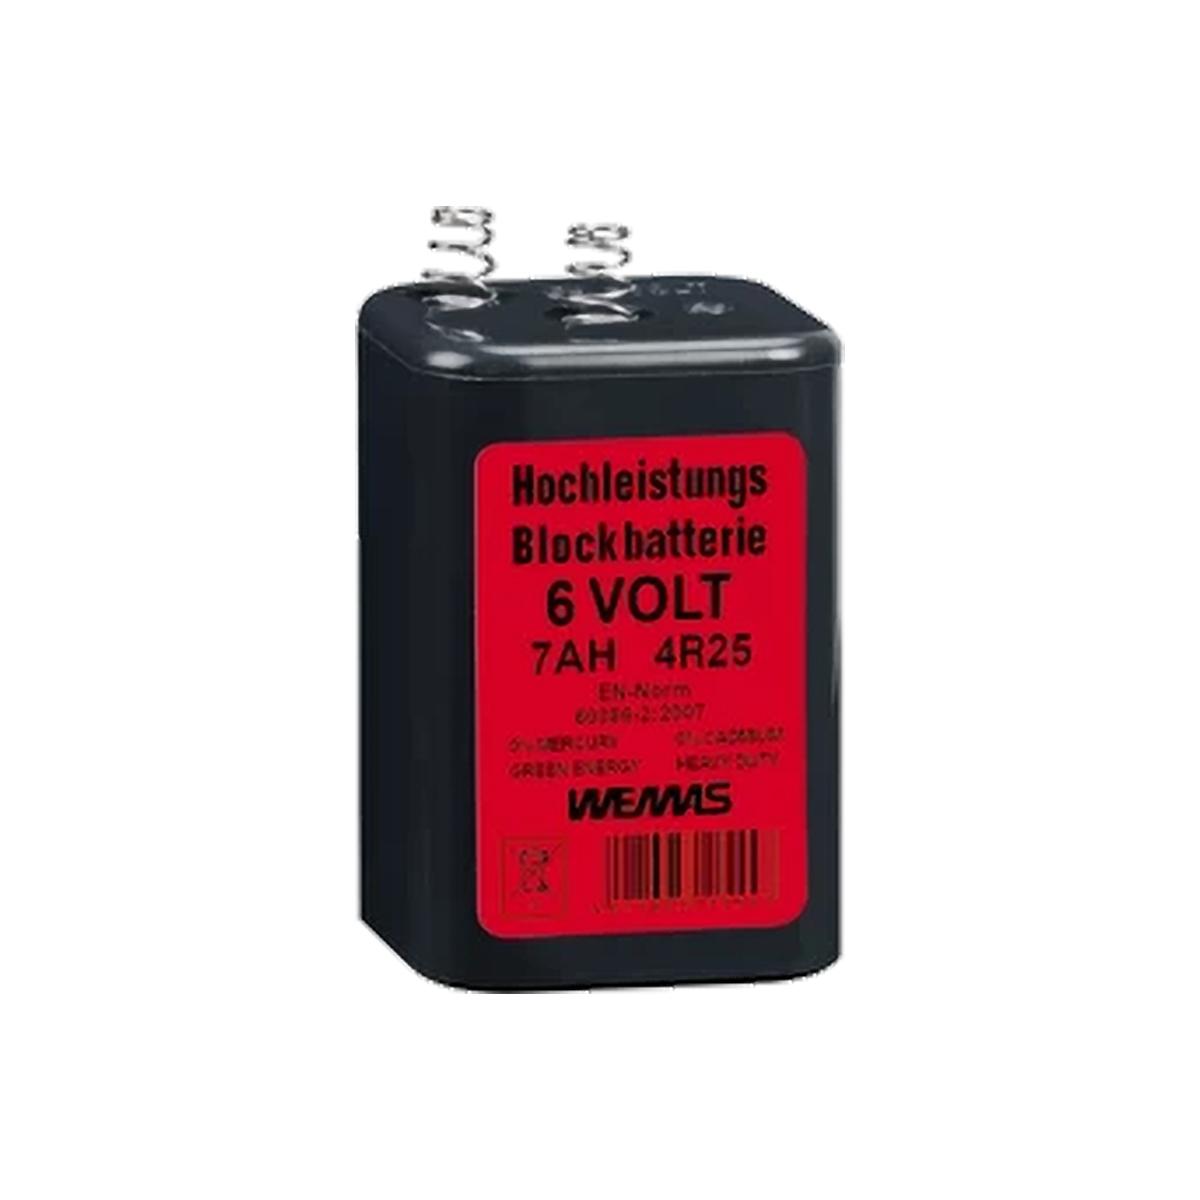 Blockbatterie 4R25 6V/7Ah